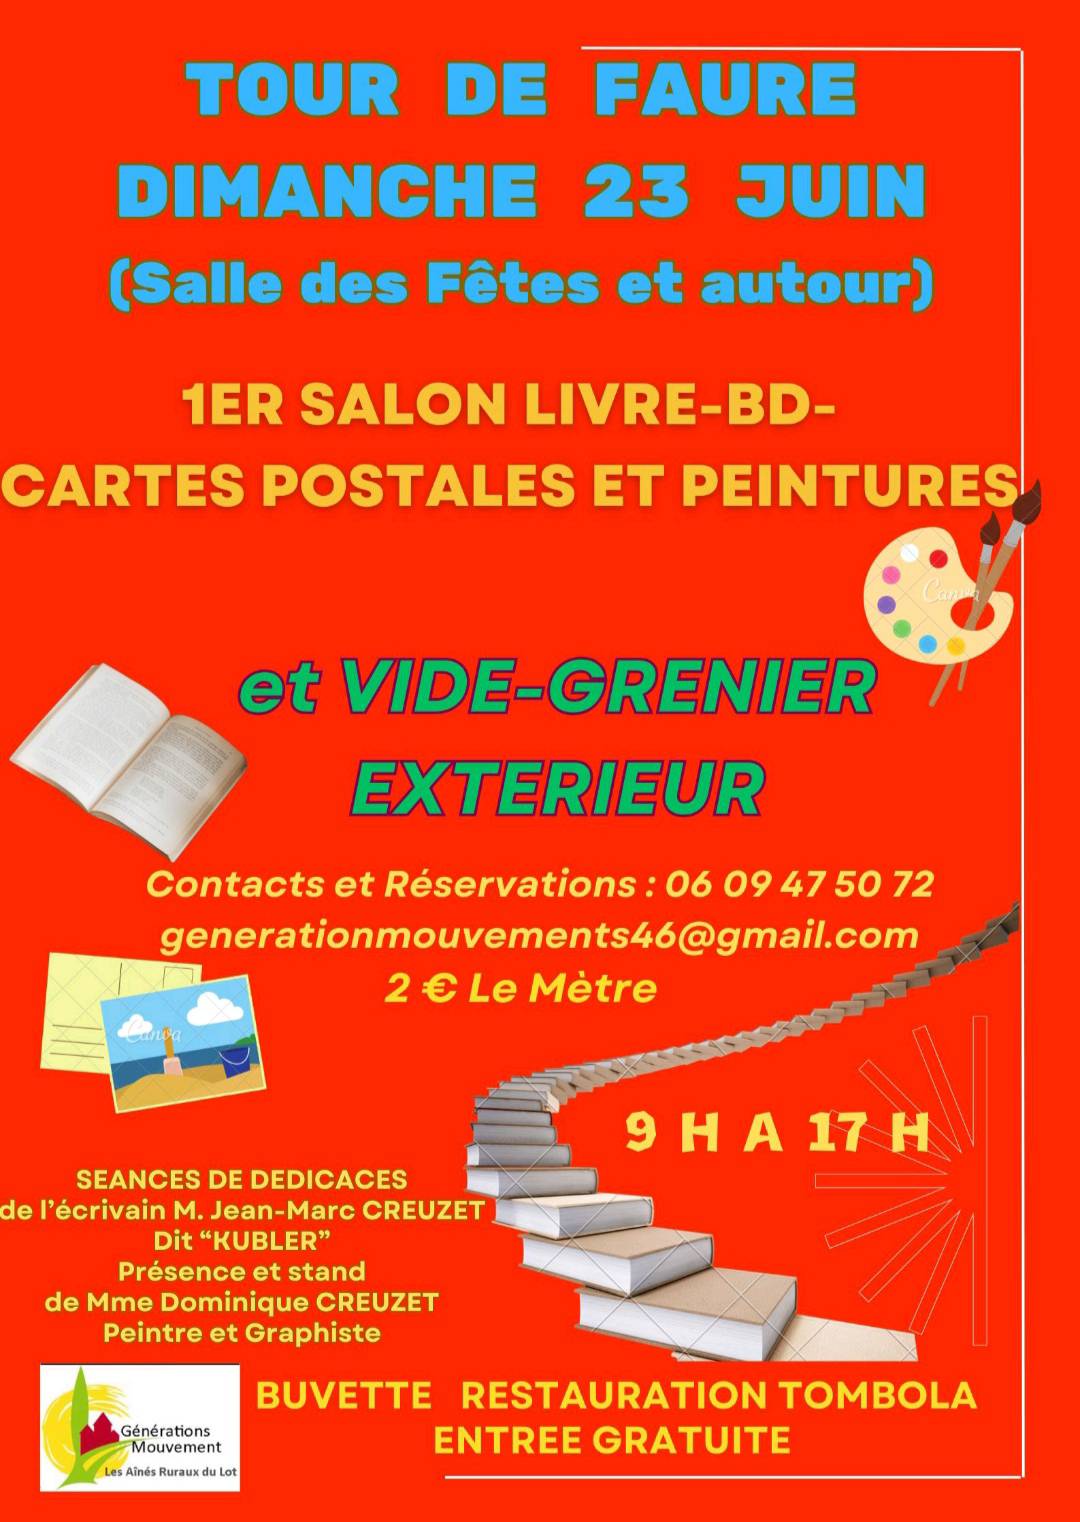 Figeac : Vide-greniers et salon du livre, BD, cartes postales et peinture à Tour-de-Faure